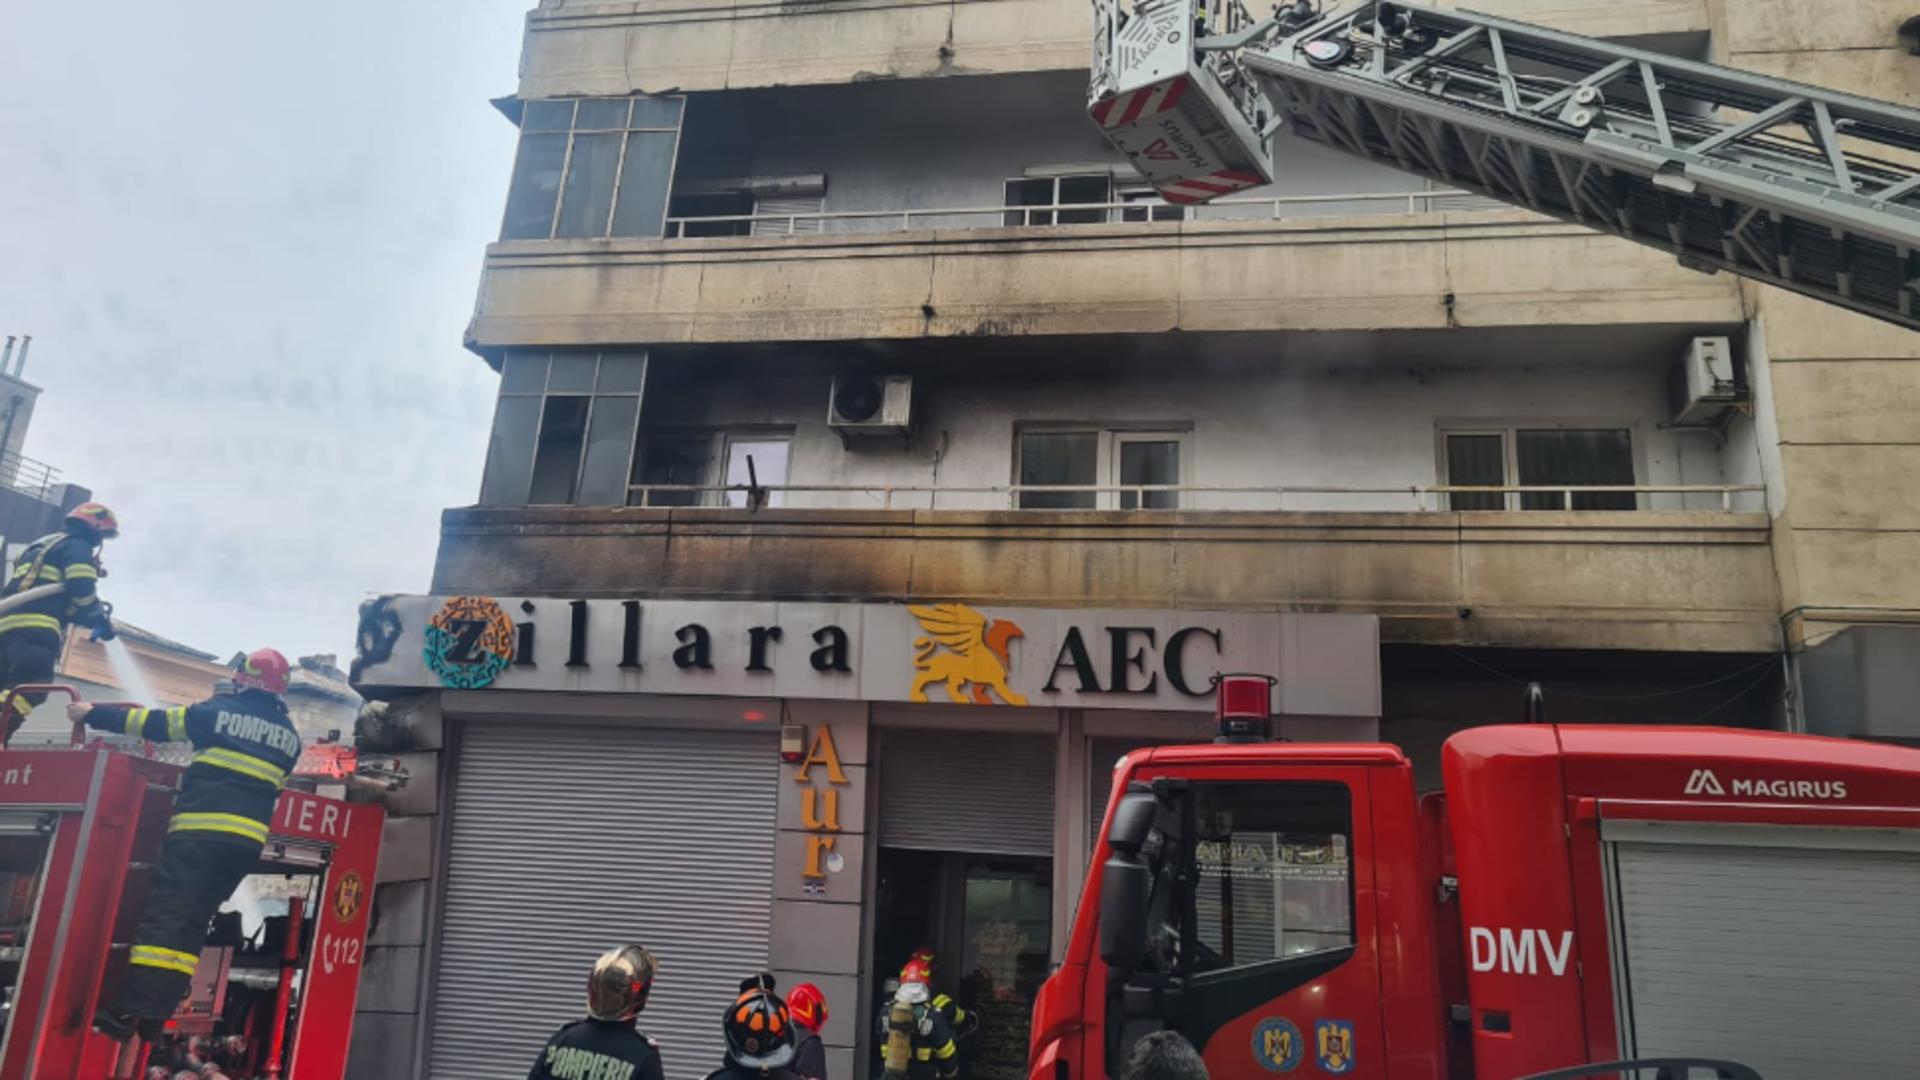 Incendiu în centrul Capitalei. Un magazin a luat FOC! Flăcările s-au extins pe faţada blocului până la etajul 1